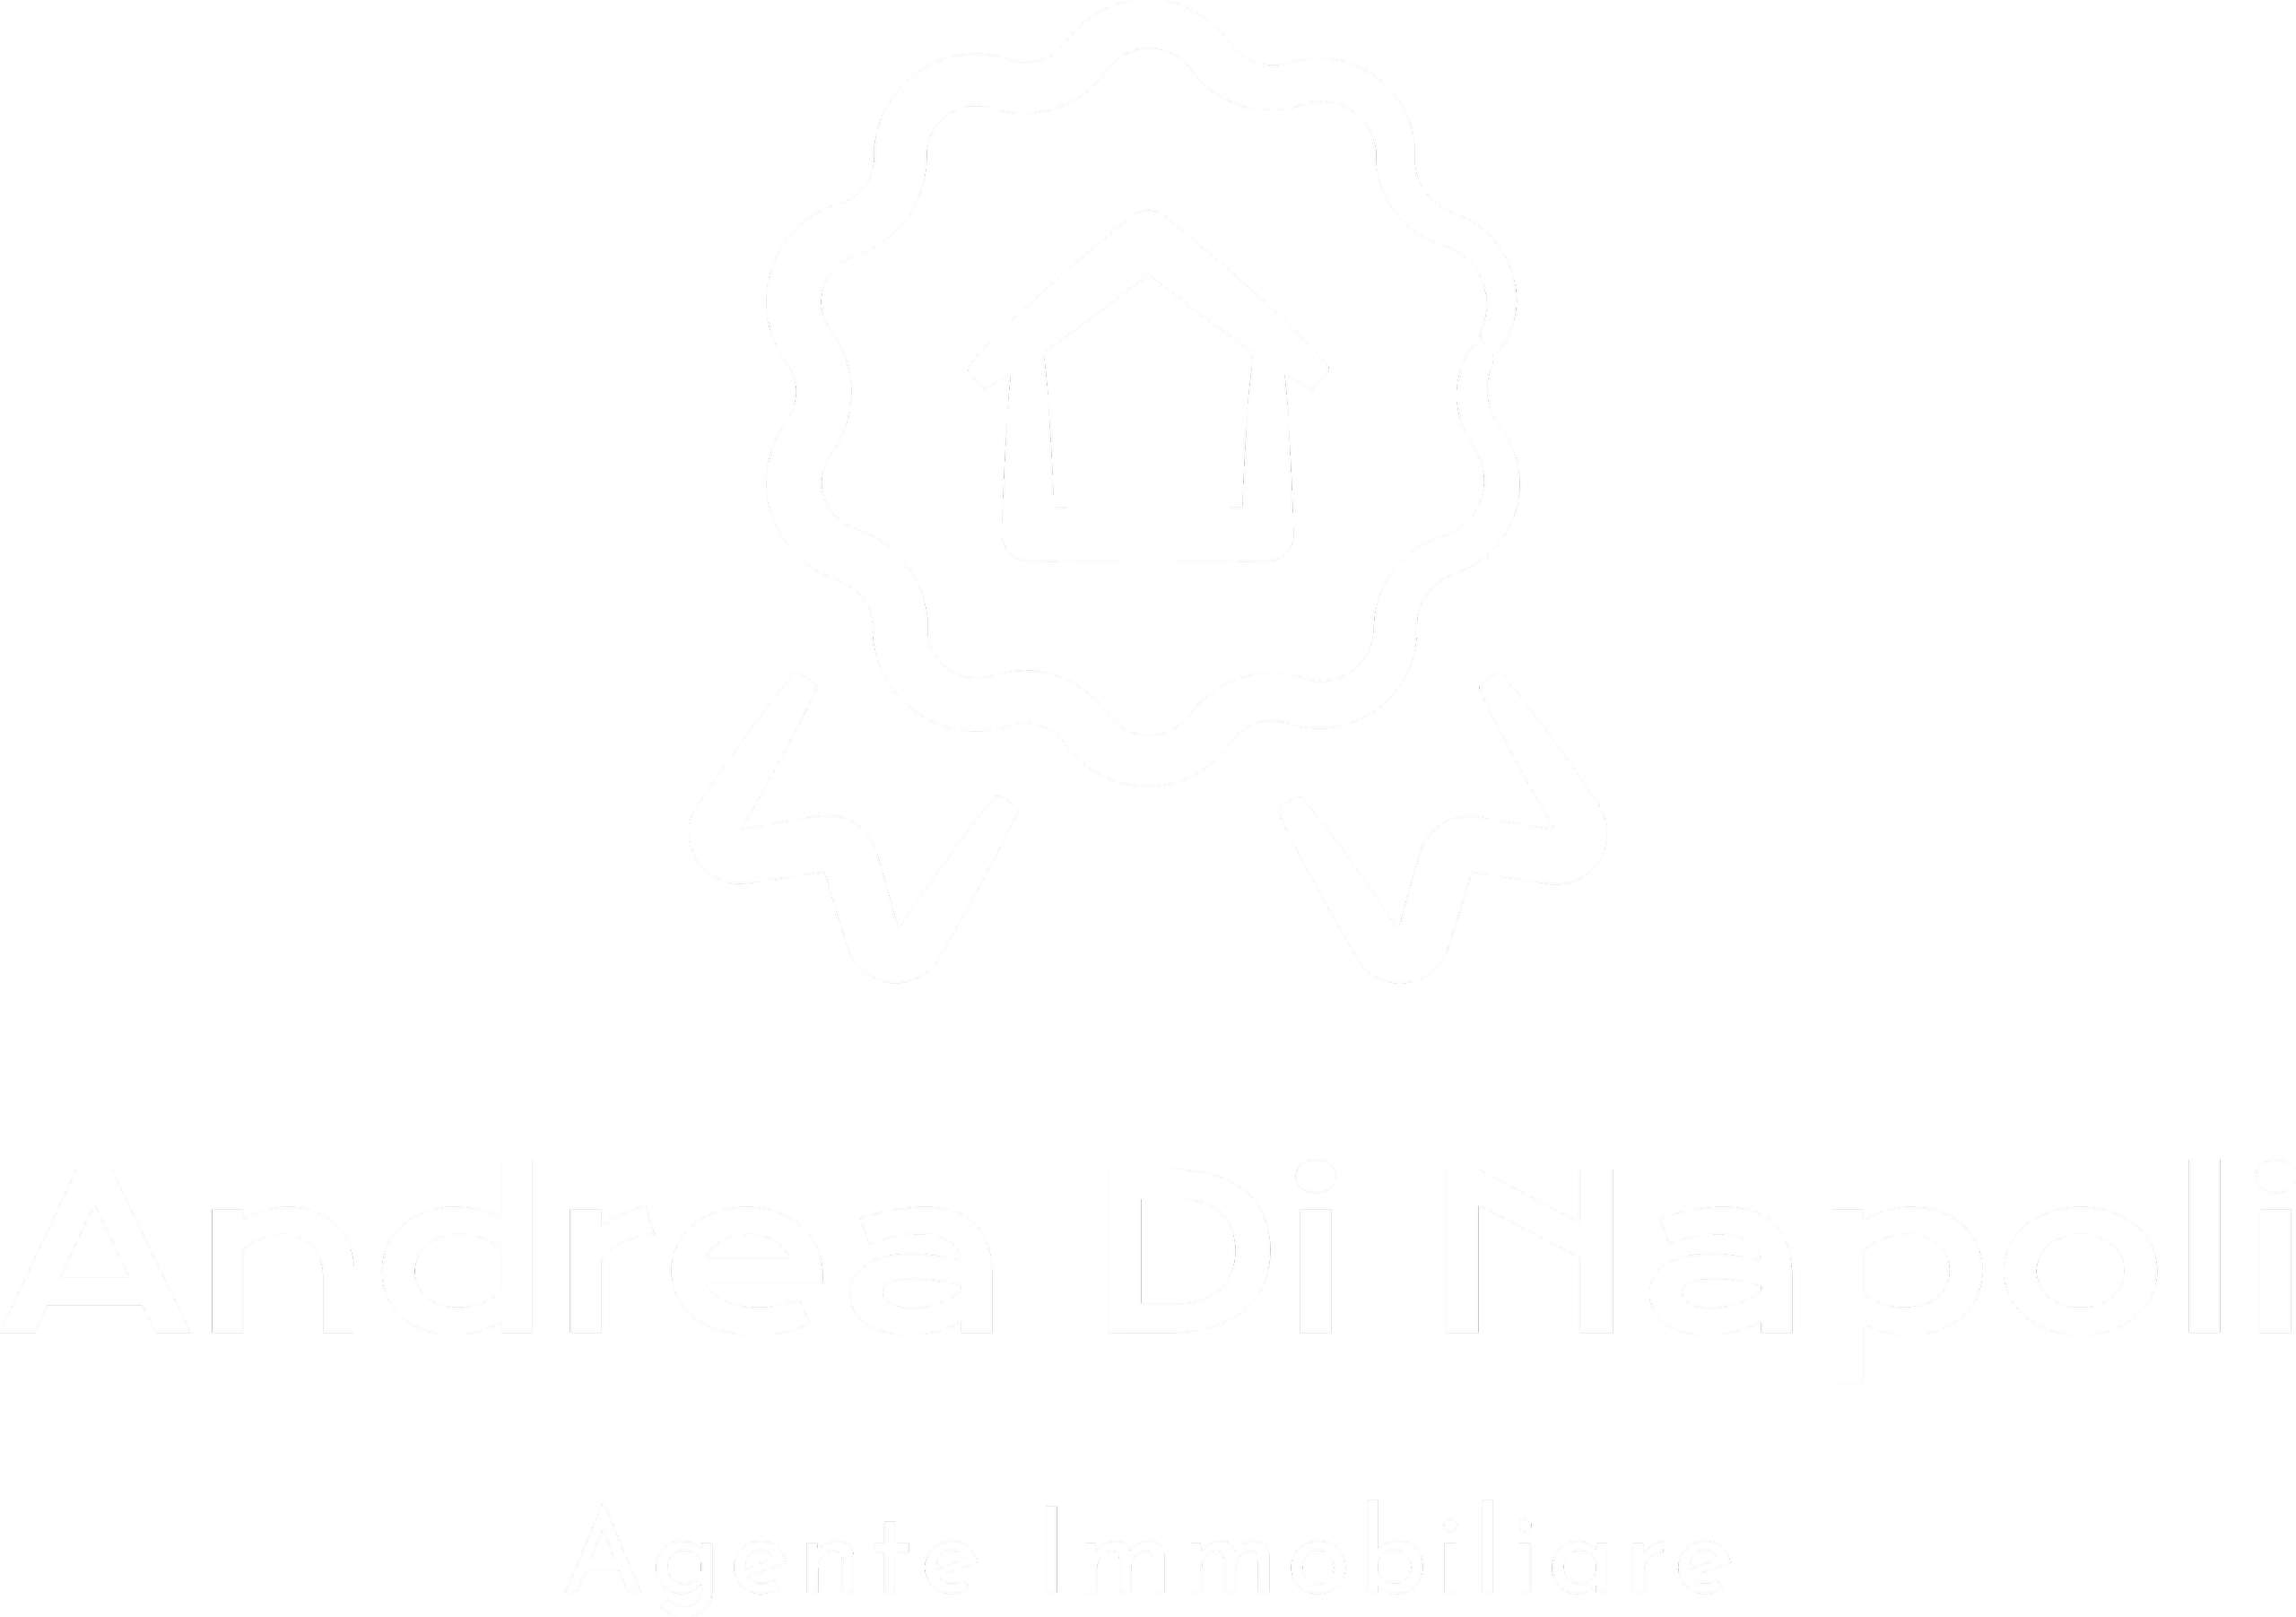 Andrea Di Napoli